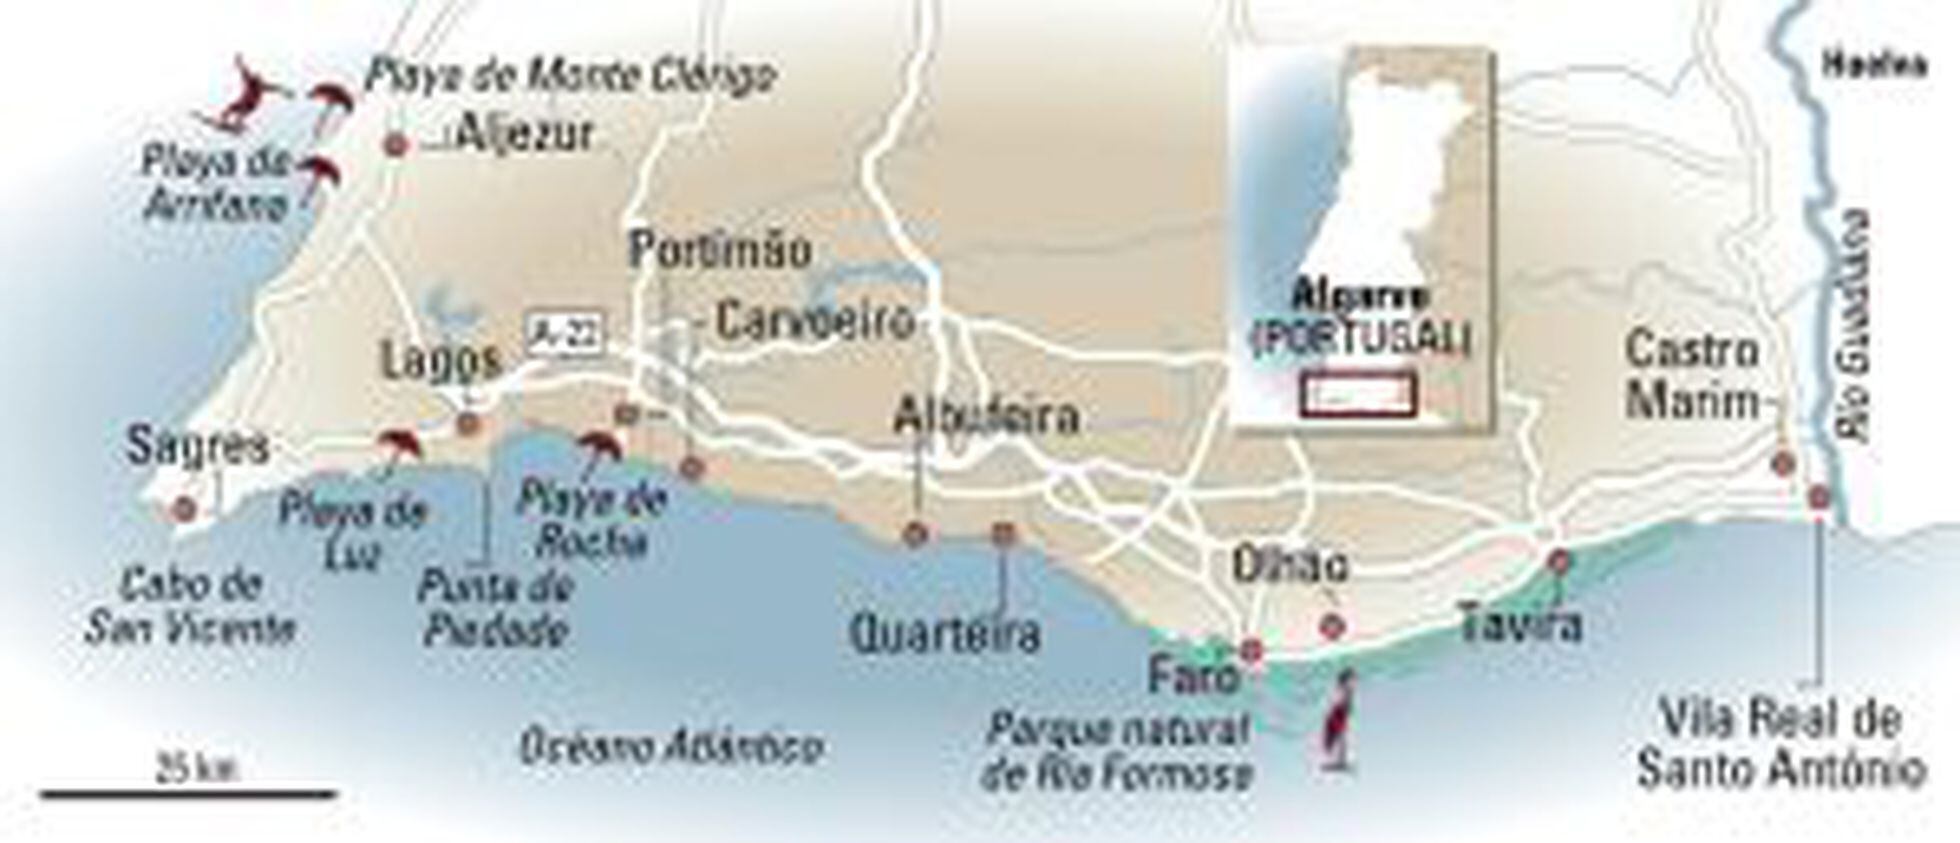 ▷ Mejores playas del Algarve: mapa + guía 2023 - Solo Ida